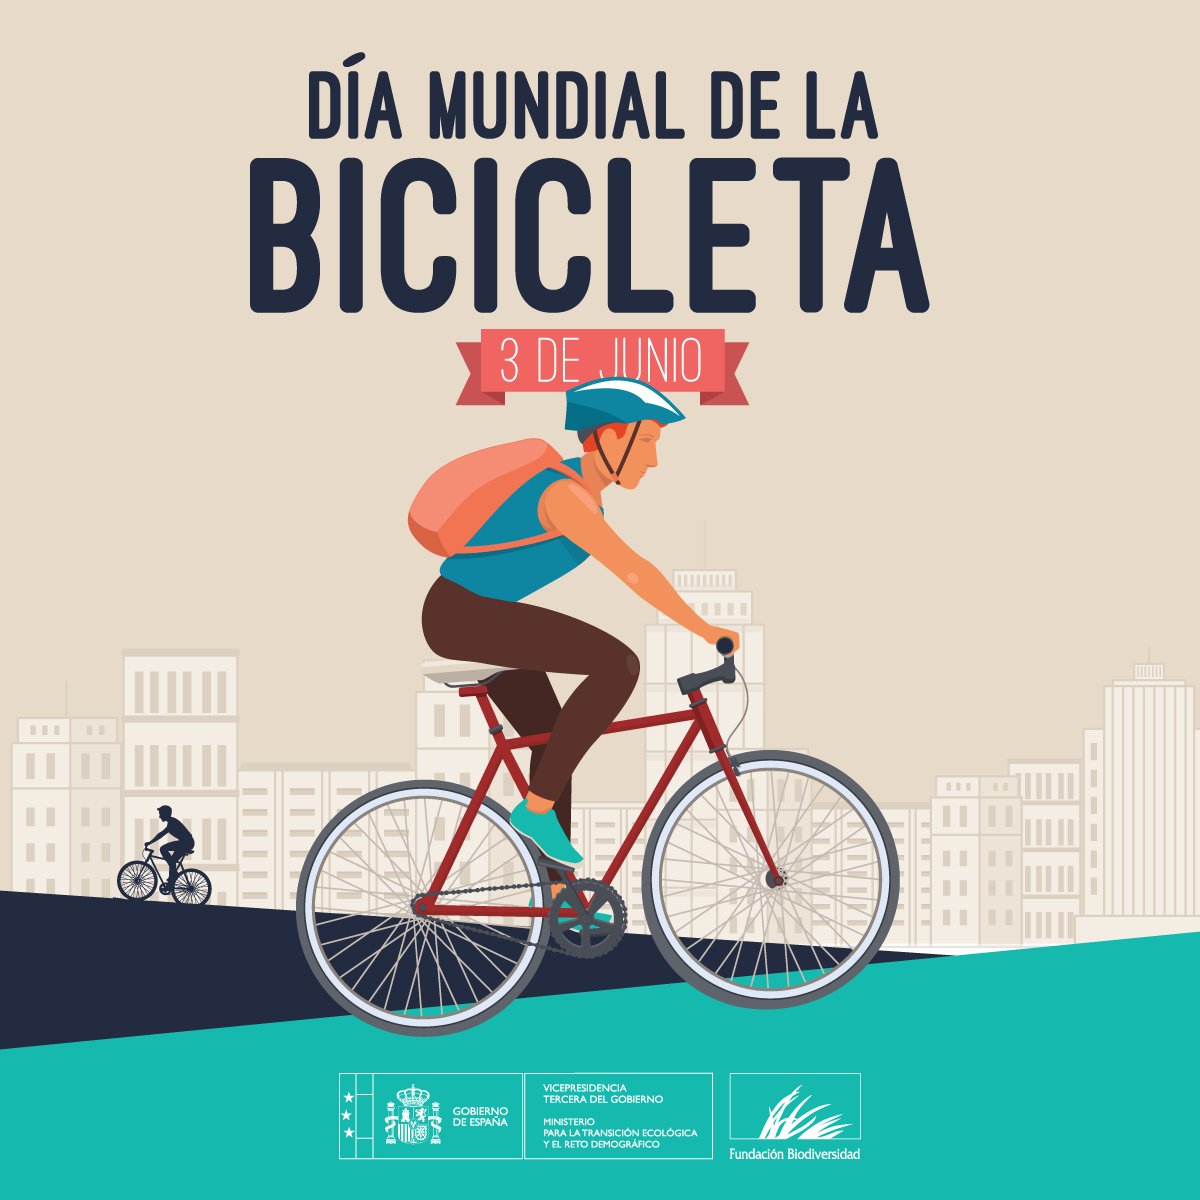 La #bicicleta 🚲 es un medio de transporte sostenible que nos ayuda a mejorar nuestra salud ❤️ y la del planeta🌍

¡Feliz #DíaDeLaBicicleta! 🚴‍♀️🚴‍♂️🚴

#DíaMundialDeLaBicicleta